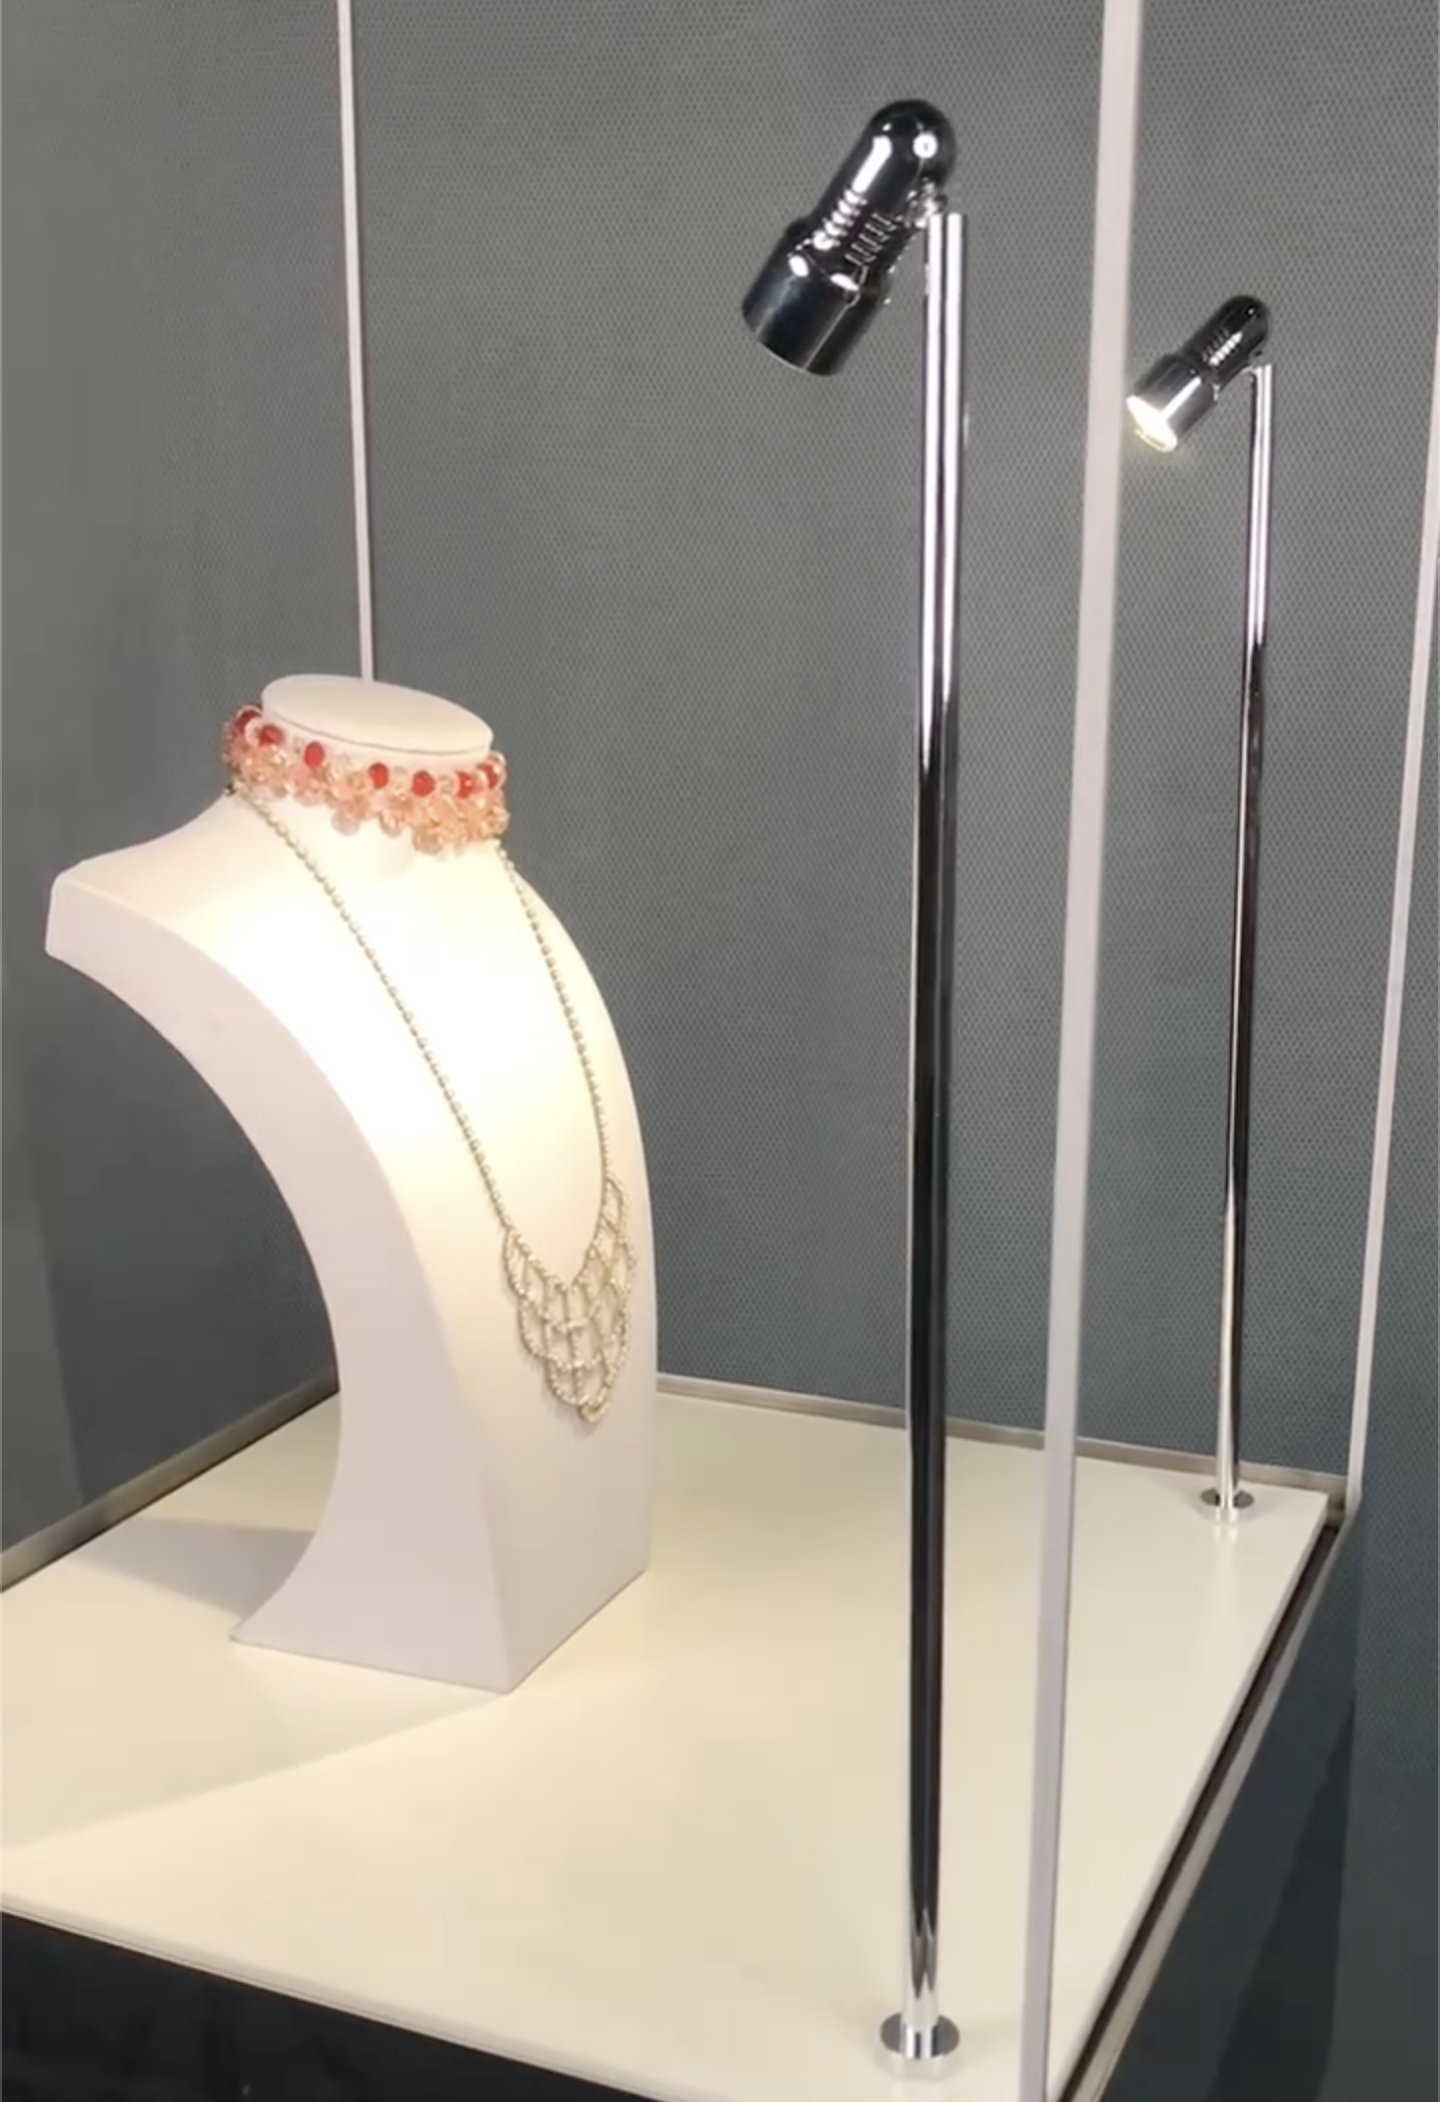 Mini stand LED sous les projecteurs : exposition de bijoux axée sur l'élégance et le renforcement